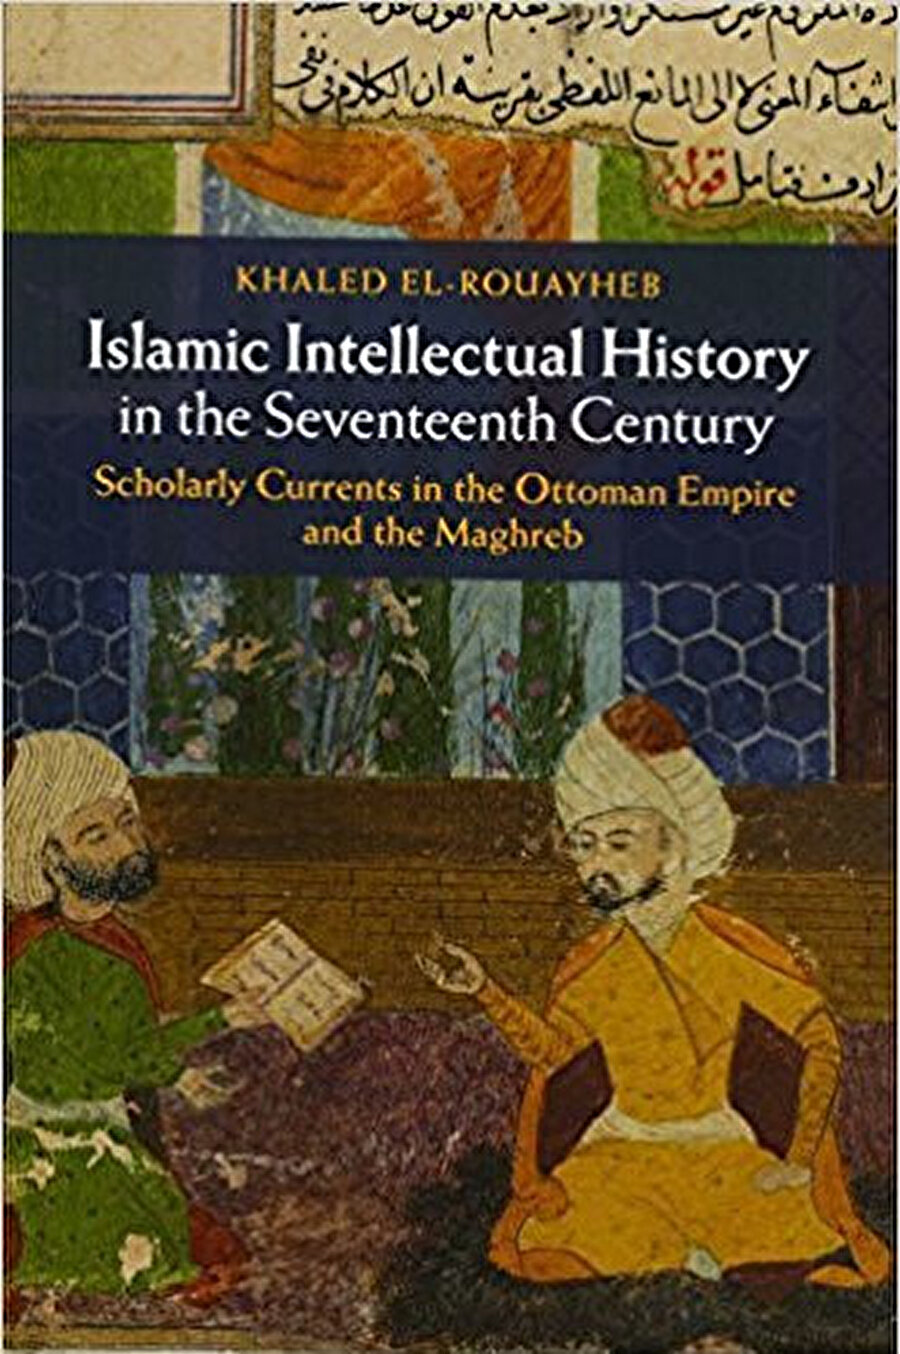 Harvard profesörlerinden Khaled el-Rouayheb’in 17. yüzyıl Osmanlı dünyasında ve Mağrib coğrafyasında dönemin entelektüel tartışmalarının izini sürdüğü kitabı, tartışmaya açtığı konular, iddiaları ve bu iddialarına getirdiği deliller çerçevesinden bakıldığında çığır açacak özellikte bir kitap. El-Rouayheb kitabını 17. yüzyılın İslam coğrafyasının düşünsel bir karanlık çağ içerisinde olduğu iddiasına karşılık olarak kaleme aldı ve el-Rouayheb’in kitabından önce baskın akademik ilgi felsefi düşüncenin en azından diğer bölgelerden daha canlı olduğuna inanılan Safeviler üzerinde idi. El-Rouayheb, kitabında, 17. yüzyıl Osmanlı Anadolu’su ve Kuzey Afrika’daki entelektüel tartışmaları ve hareketliliği araştırırken, bir yandan da aslında, 16. yüzyıldan itibaren İslam dünyasının entelektüel bir durağanlık devresine girdiği iddiasını çürütüyor. Taklid ve tahkik tartışmasının gerçek mahiyetini açıklayan kitap bu tartışmanın dönemdeki merkeziliğini üç önemli entelektüel alan üzerinden gösteriyor; tasavvuf, mantık ve belagat. El-Rouayheb’in üç konuda da bir bölgeden diğer bir bölgeye taşınan tartışmaları konu alması, bu dönemde İslam dünyasındaki sınırlar üstü entelektüel bağlantıları göstermesi açısından ilgi çekici. Kitabın bir diğer ilgi çekici yanı, ilmin klasik hoca-talebe arasında nakil yoluyla aktarımına alternatif olarak Osmanlı âlimlerin 17-18. yüzyıllarda metinlerin derinlemesine ve eleştirel şekilde okunması yoluyla yeni bir metot geliştirdiklerini iddia etmesi.17. Yüzyıl İslami Düşünce Tarihi ,Khaled el-Rouayheb, Islamic Intellectual History in the Seventeenth Century Scholarly Currents in the Ottoman Empire and the Maghreb, Cambridge University Press, 2015, s.399.